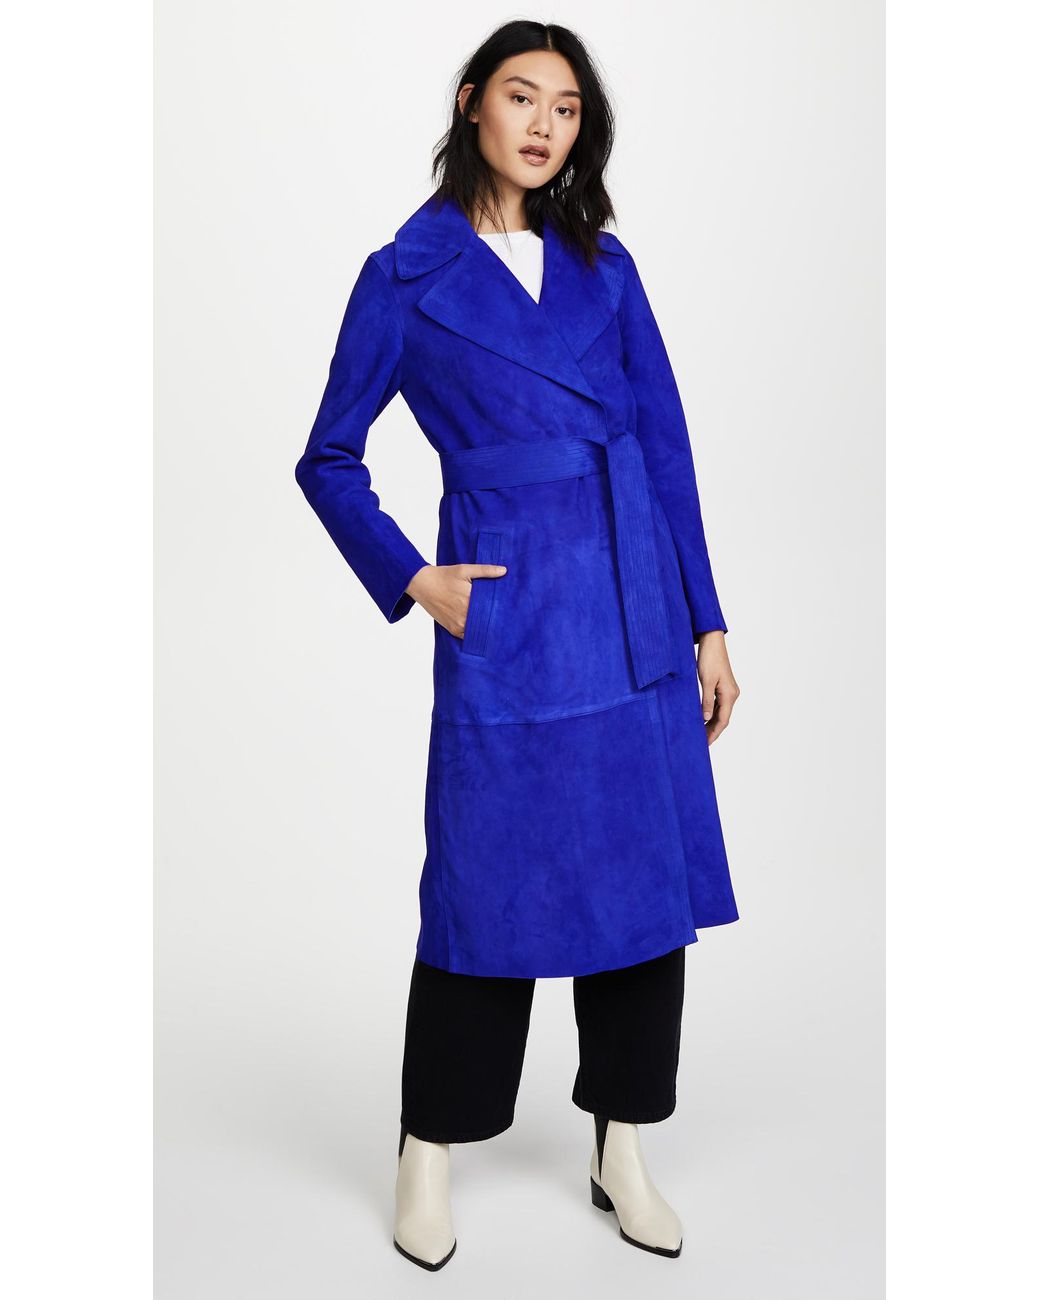 Diane von Furstenberg Suede Trench Coat in Blue | Lyst